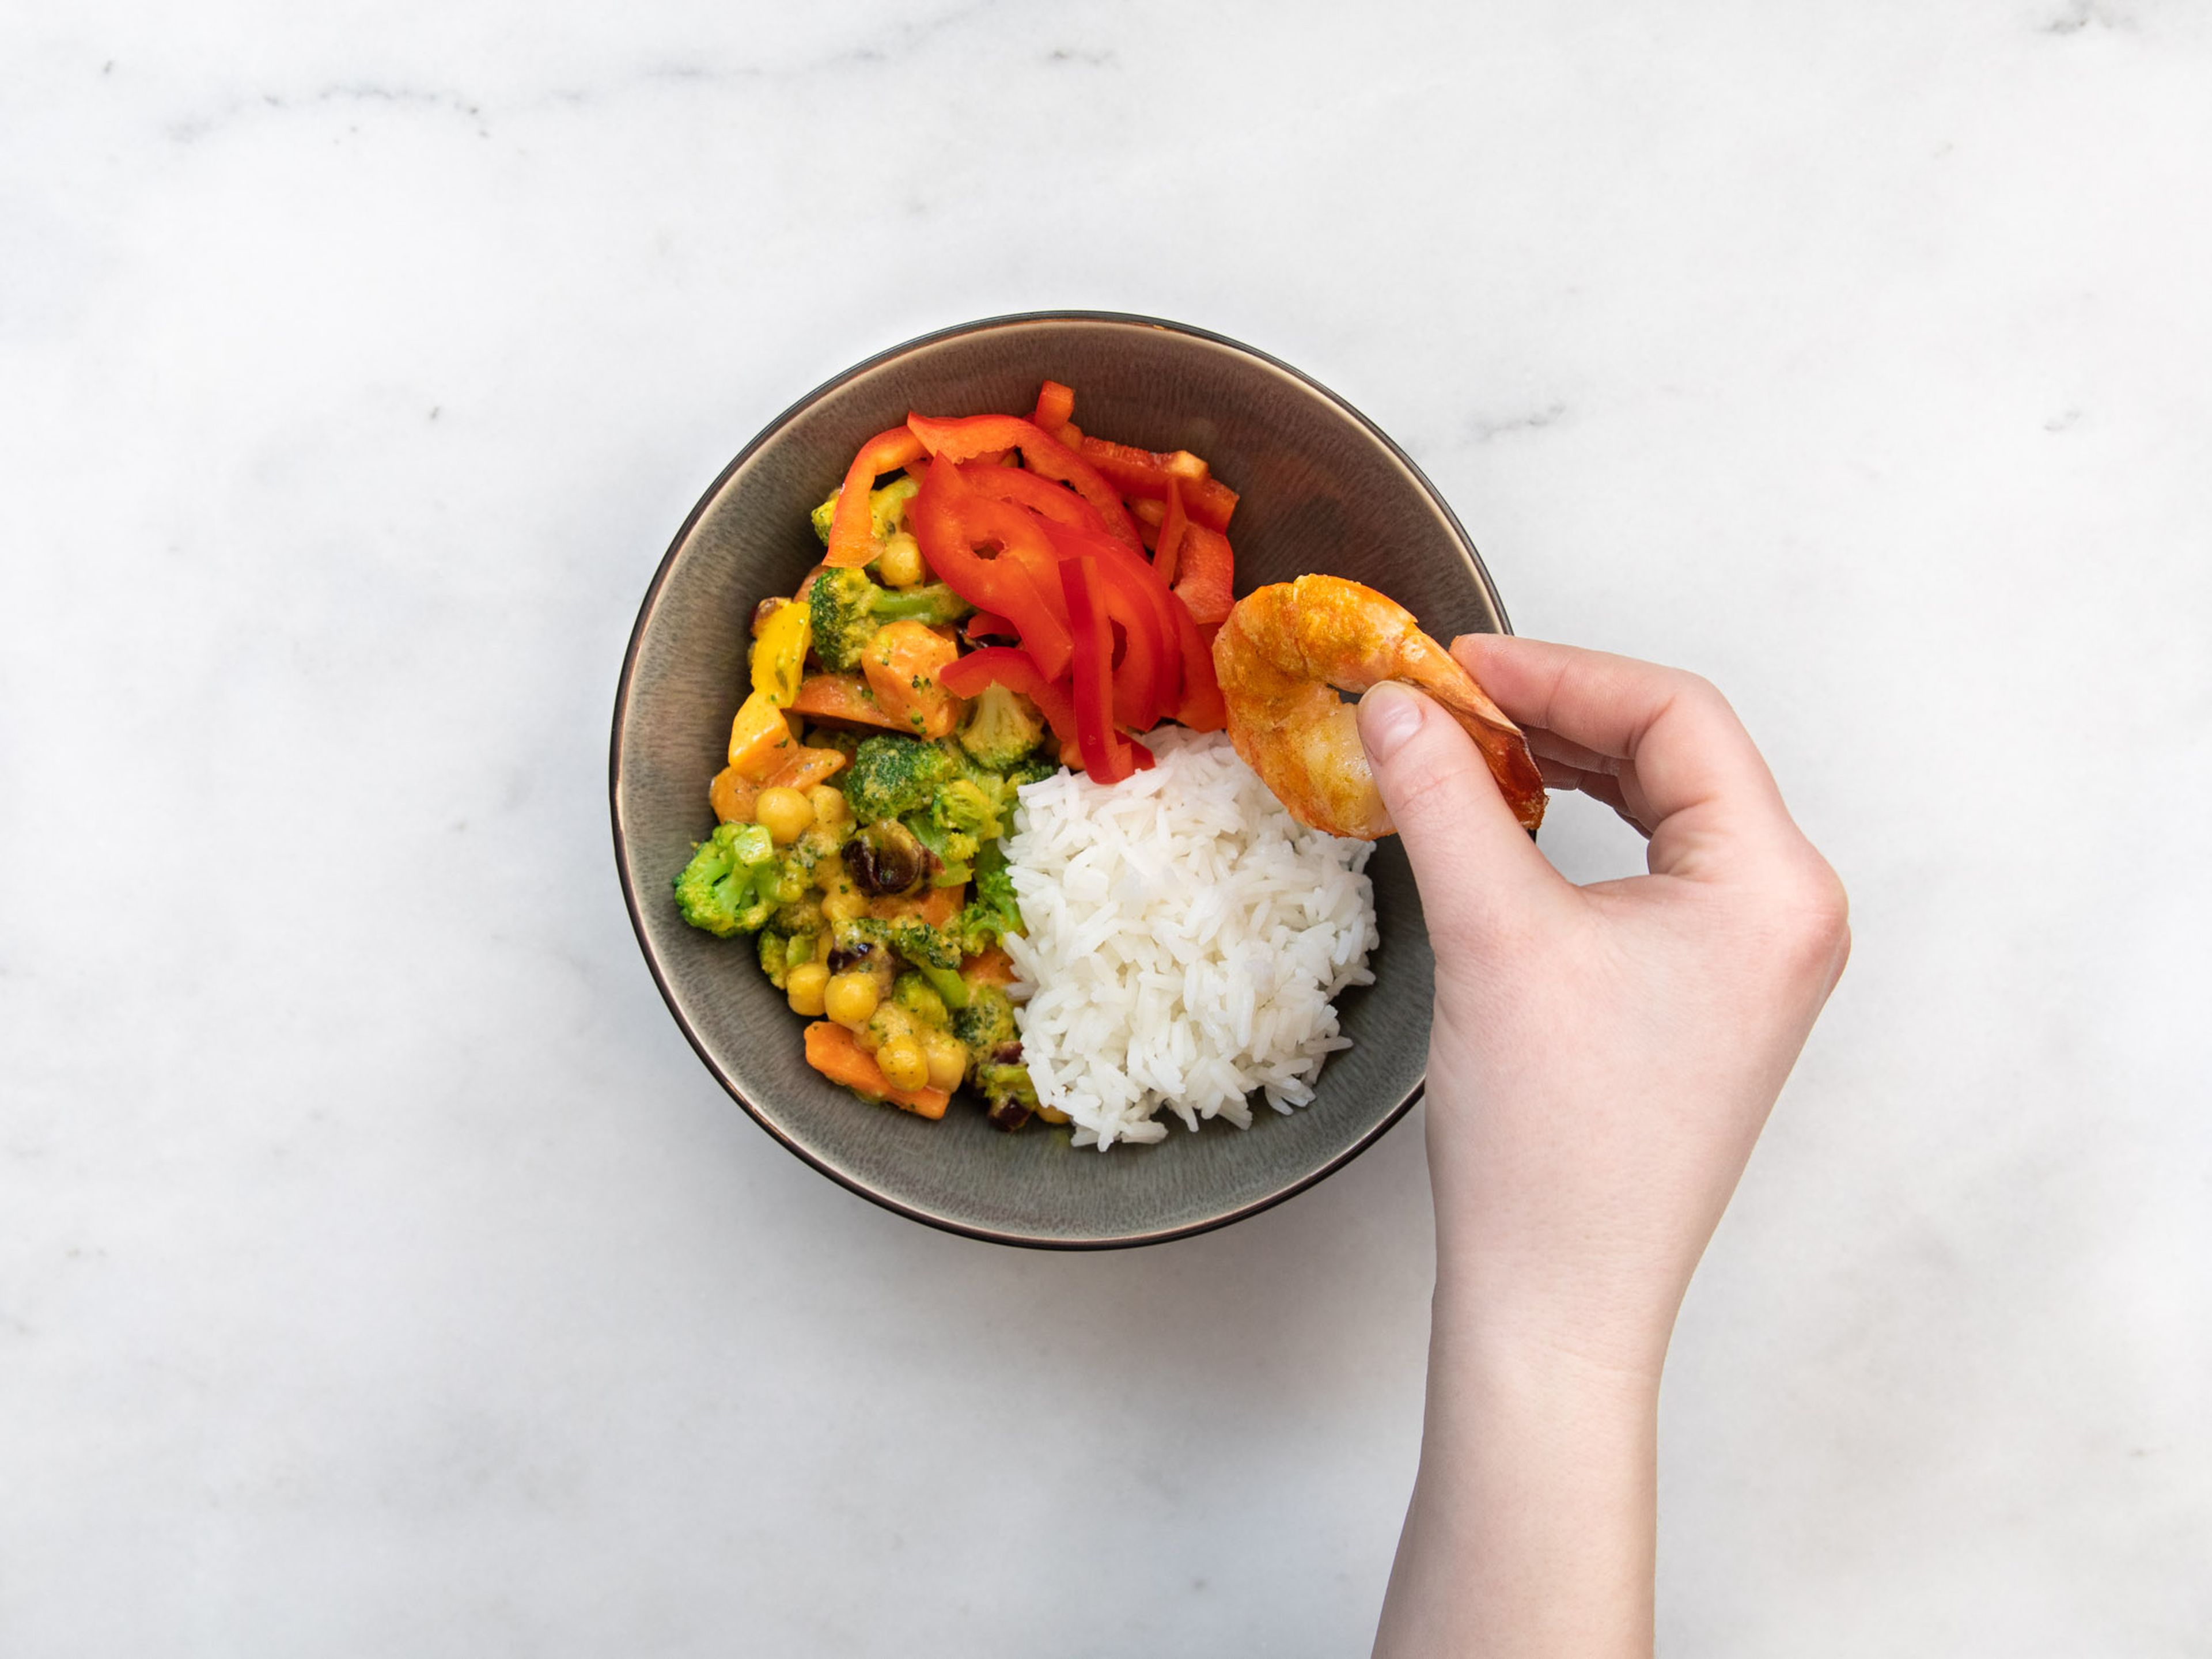 Gemüse mit Reis, roter Paprika, Garnelen und Mayonnaise in einer Schüssel anrichten. Mit Koriander garnieren. Guten Appetit!